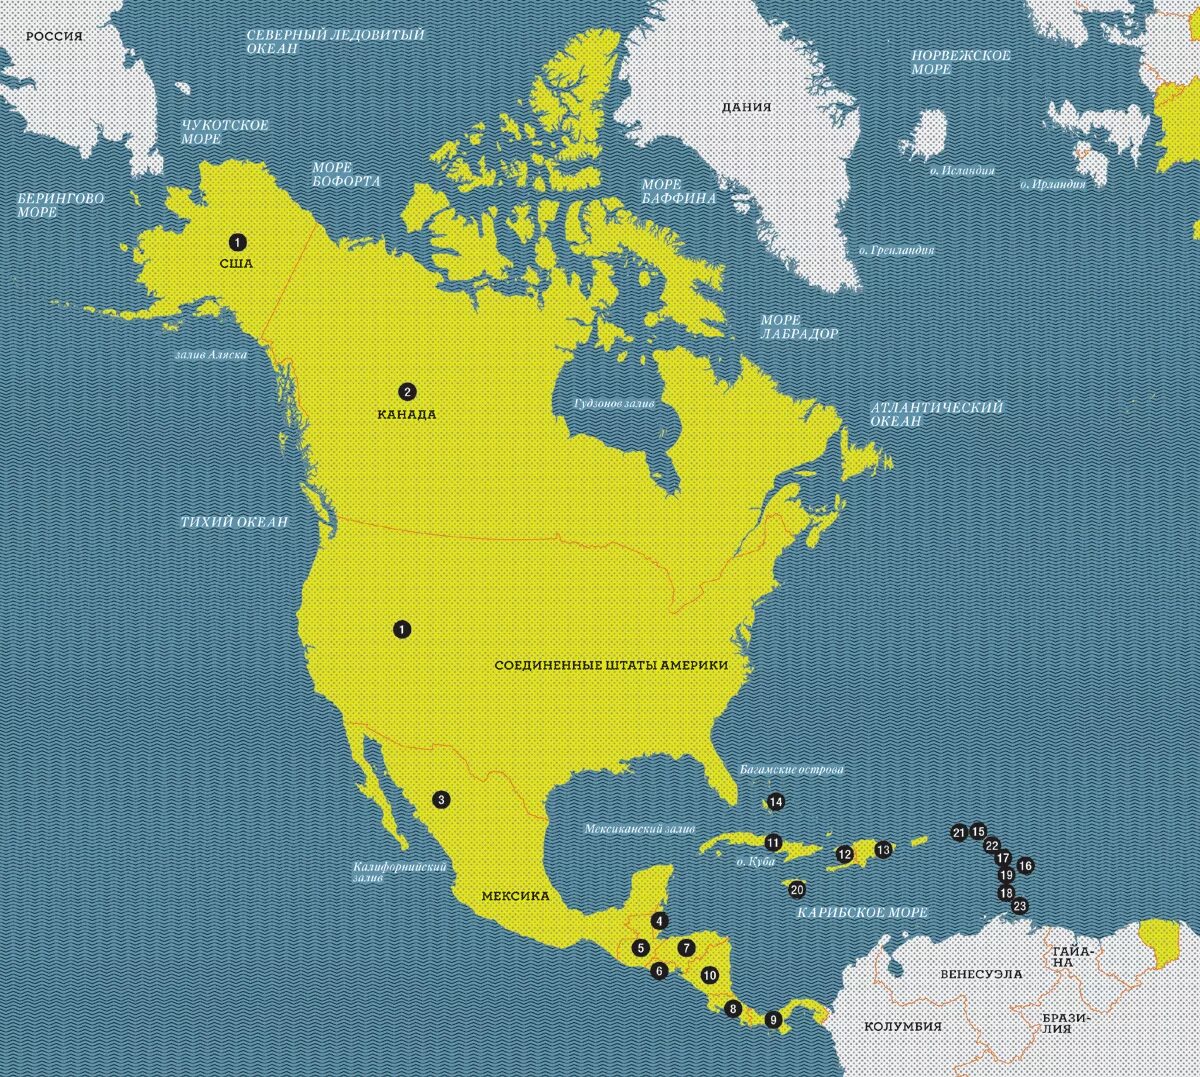 Название государства и название столицы северной америки. Государства Северной Америки и их столицы на карте. Страны Северной Америки. С раны сеаерноц Америки. Страны Северной армике.